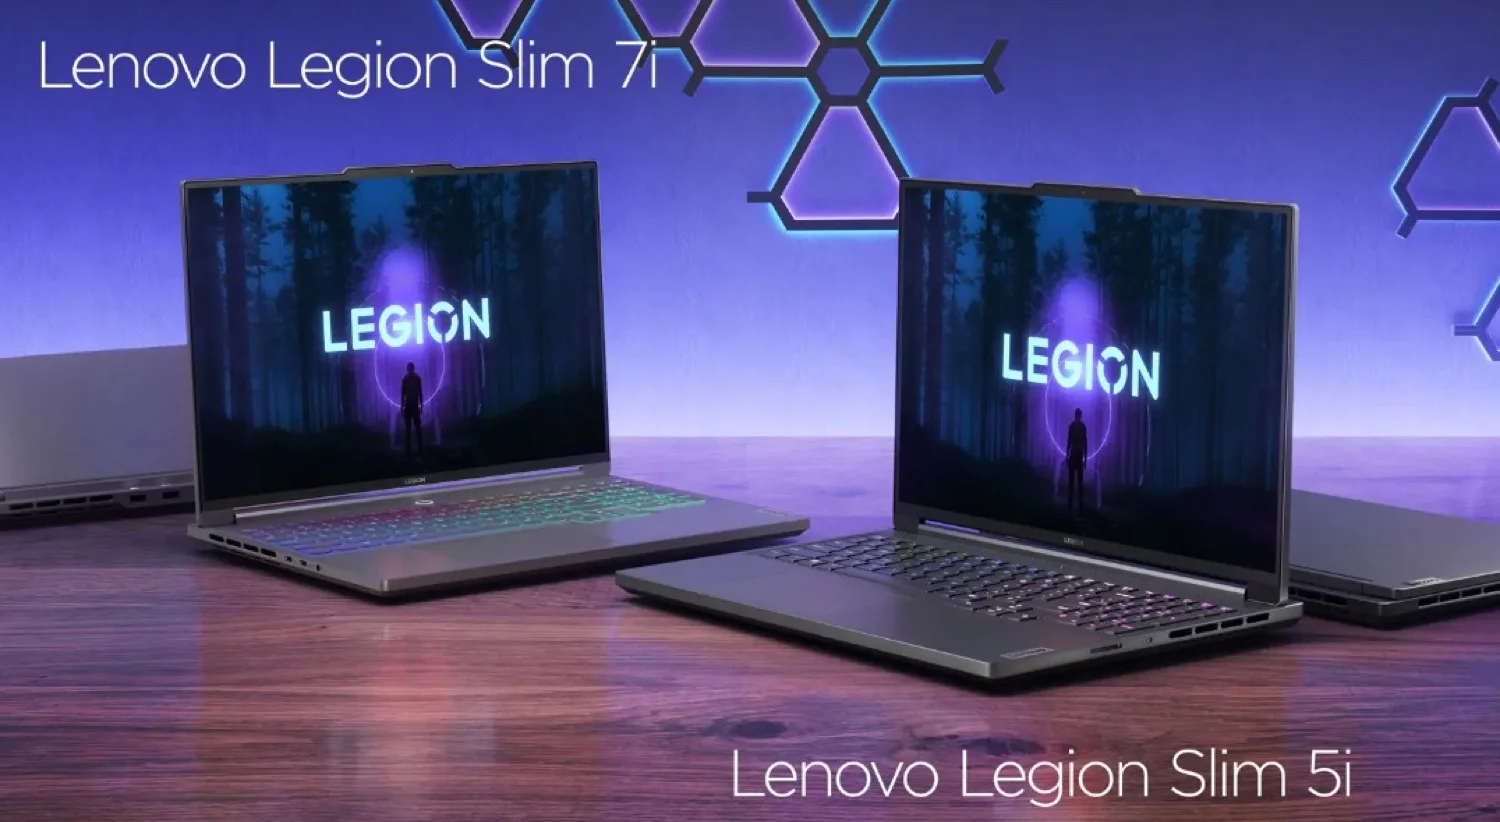 Características de la nueva serie Lenovo Legion Slim